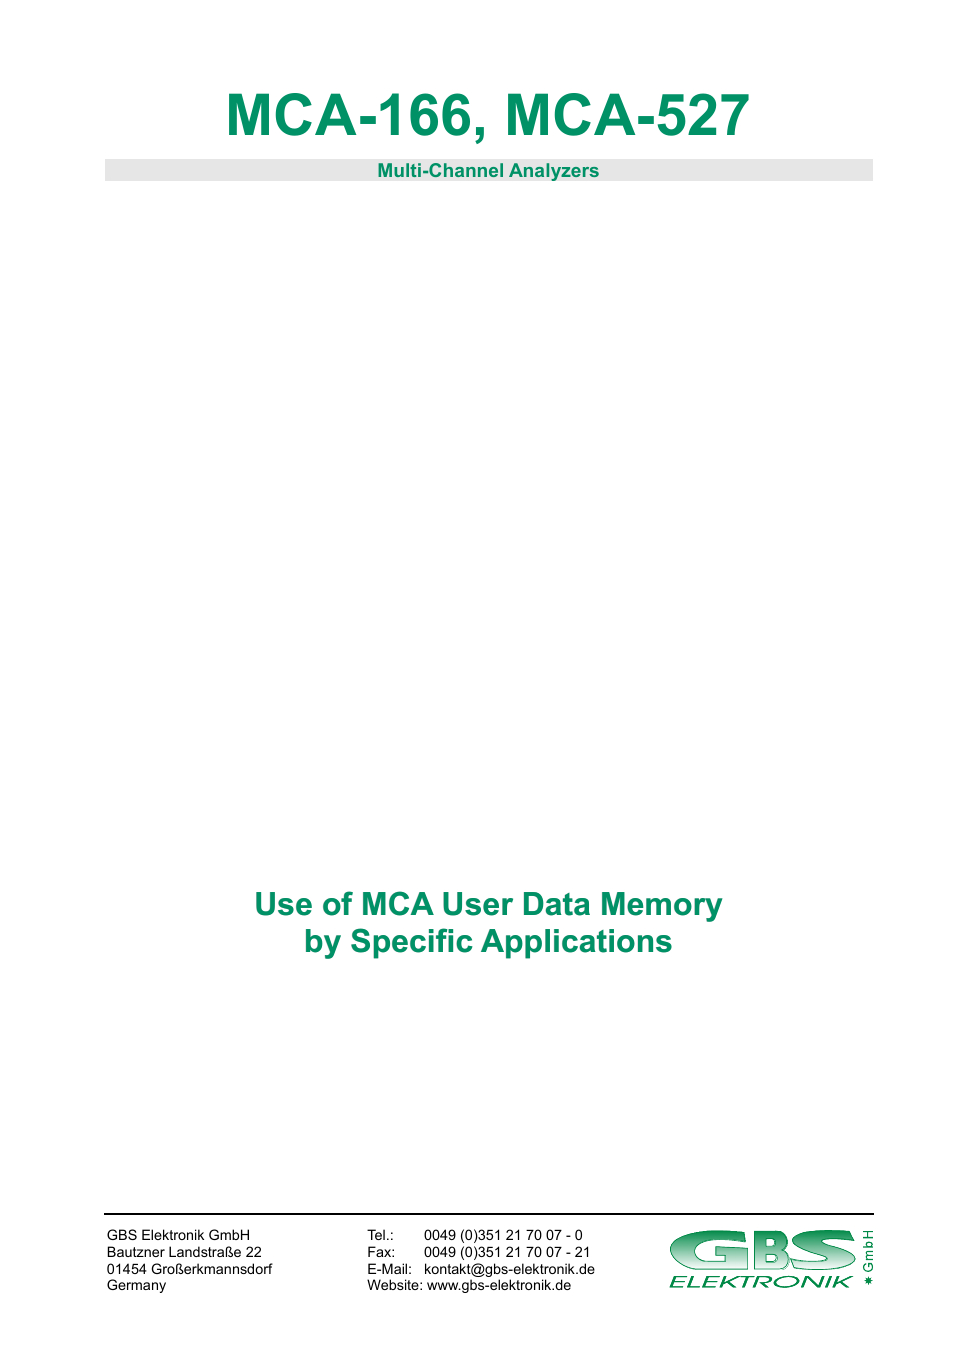 GBS Elektronik MCA-166 User Data Memory User Manual | 4 pages